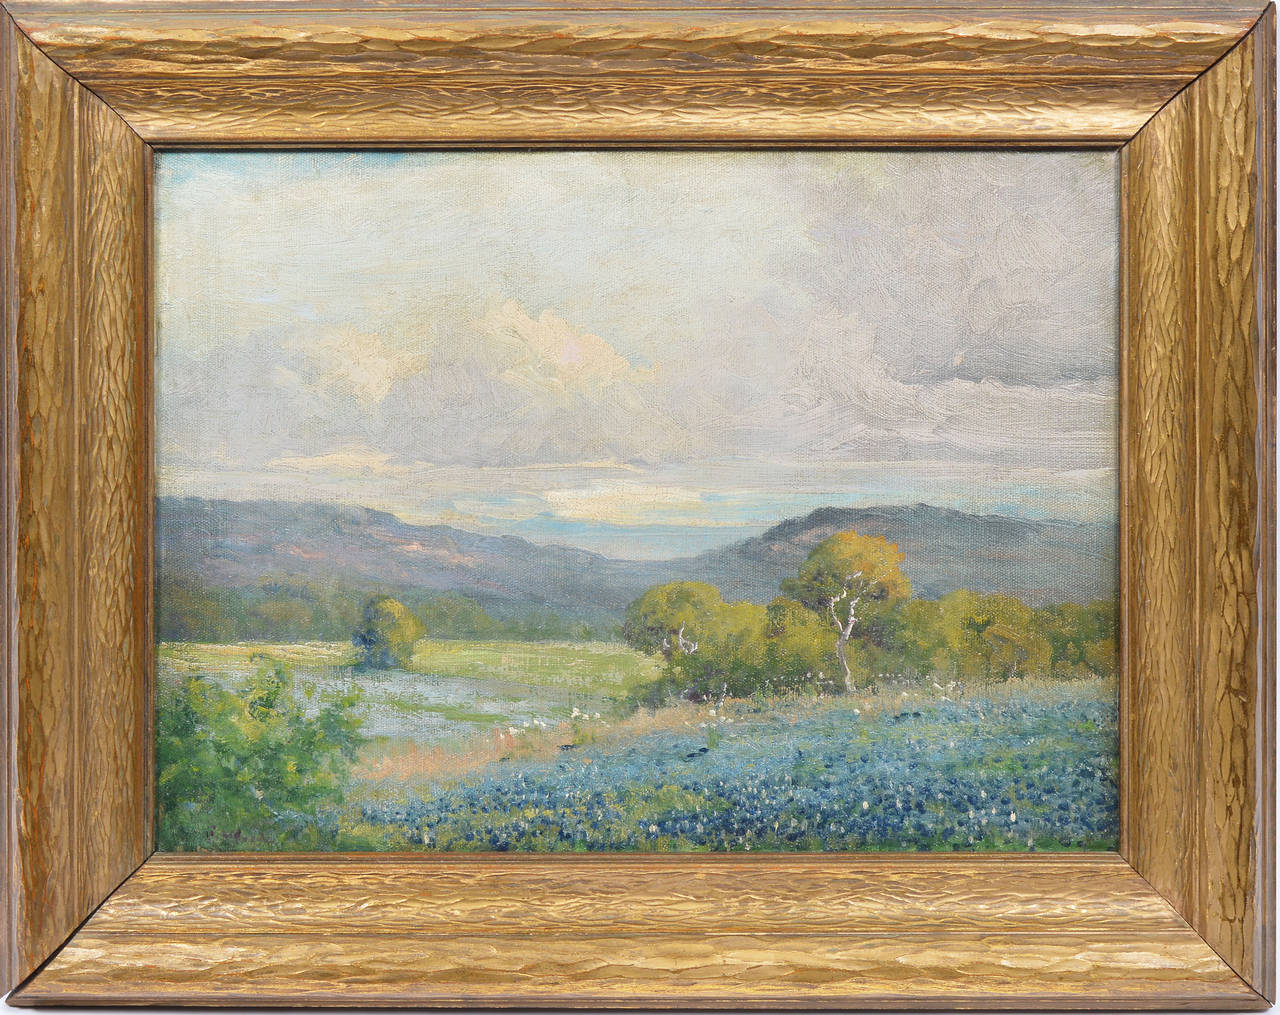 Robert William Wood Landscape Painting - Texas Bluebonnet Landscape